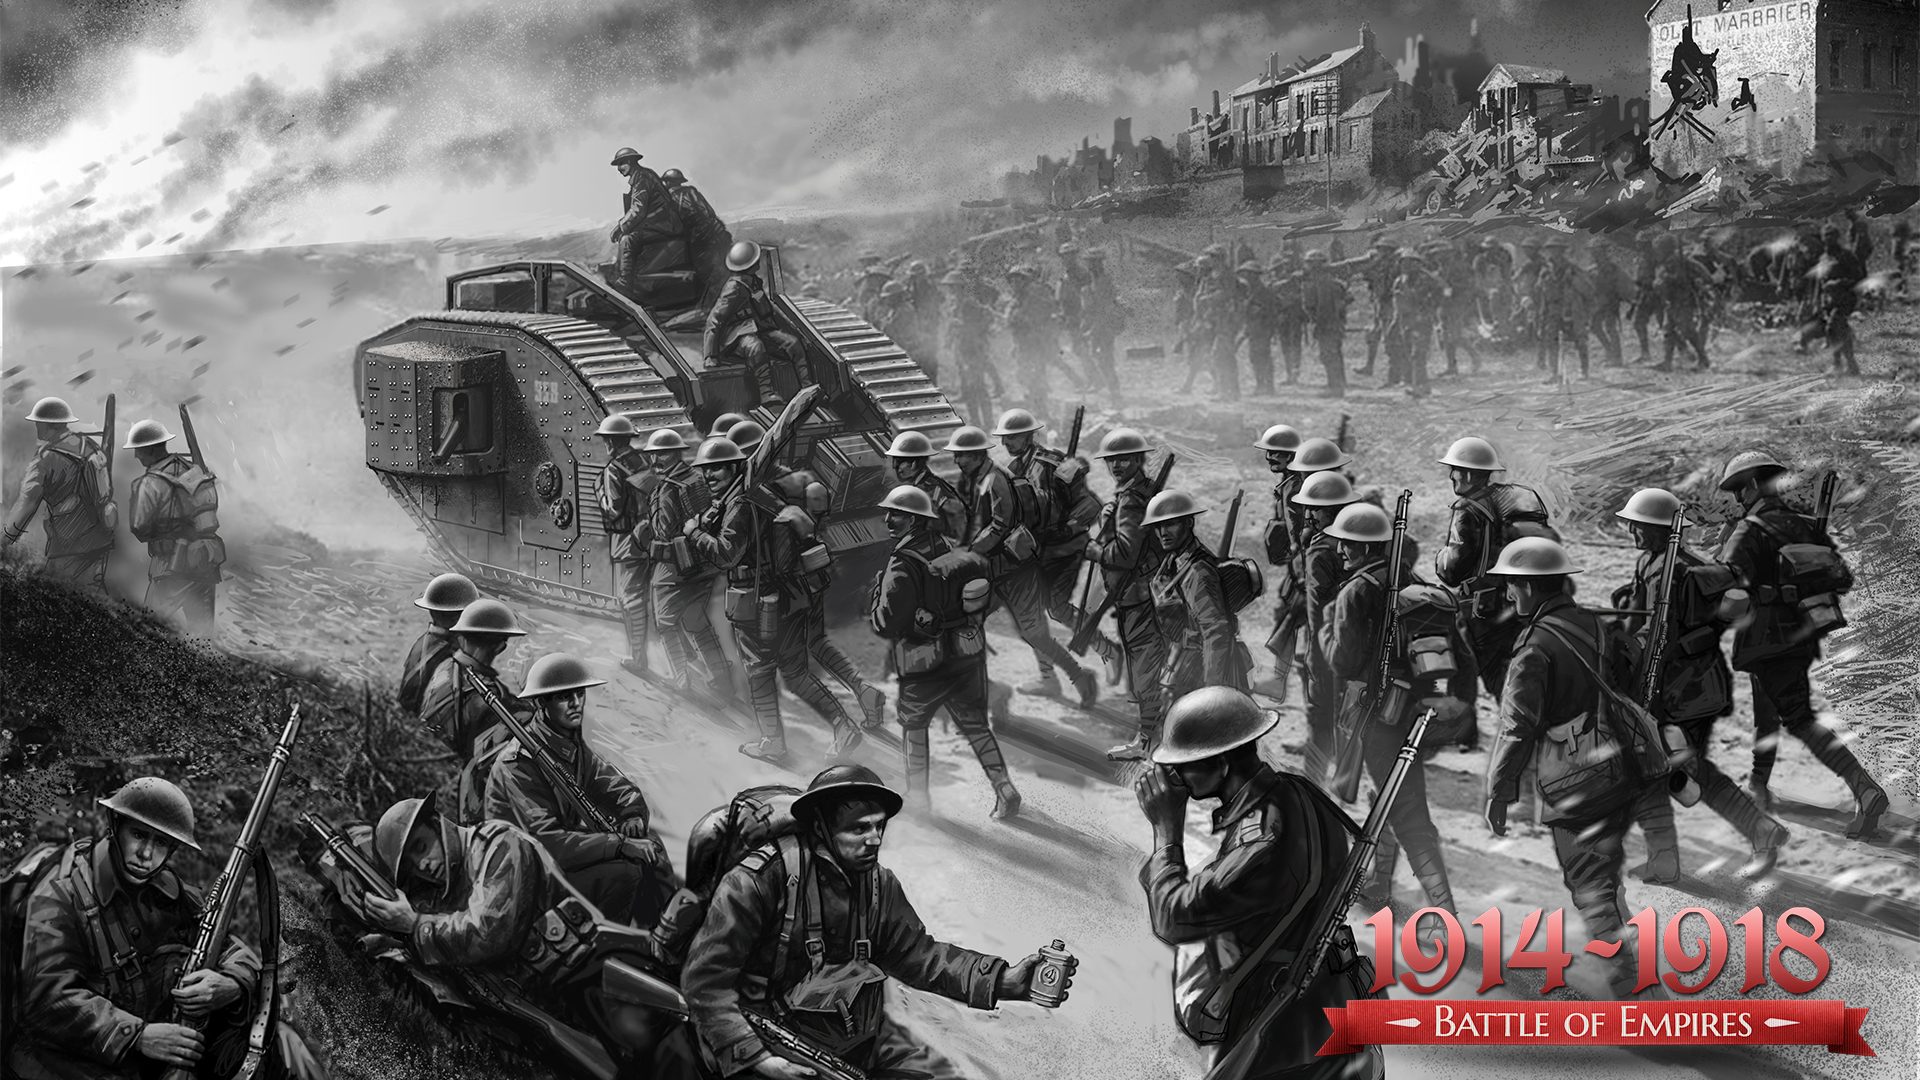 Battle of Empires: 1914-1918 - Battle of Cambrai Featured Screenshot #1